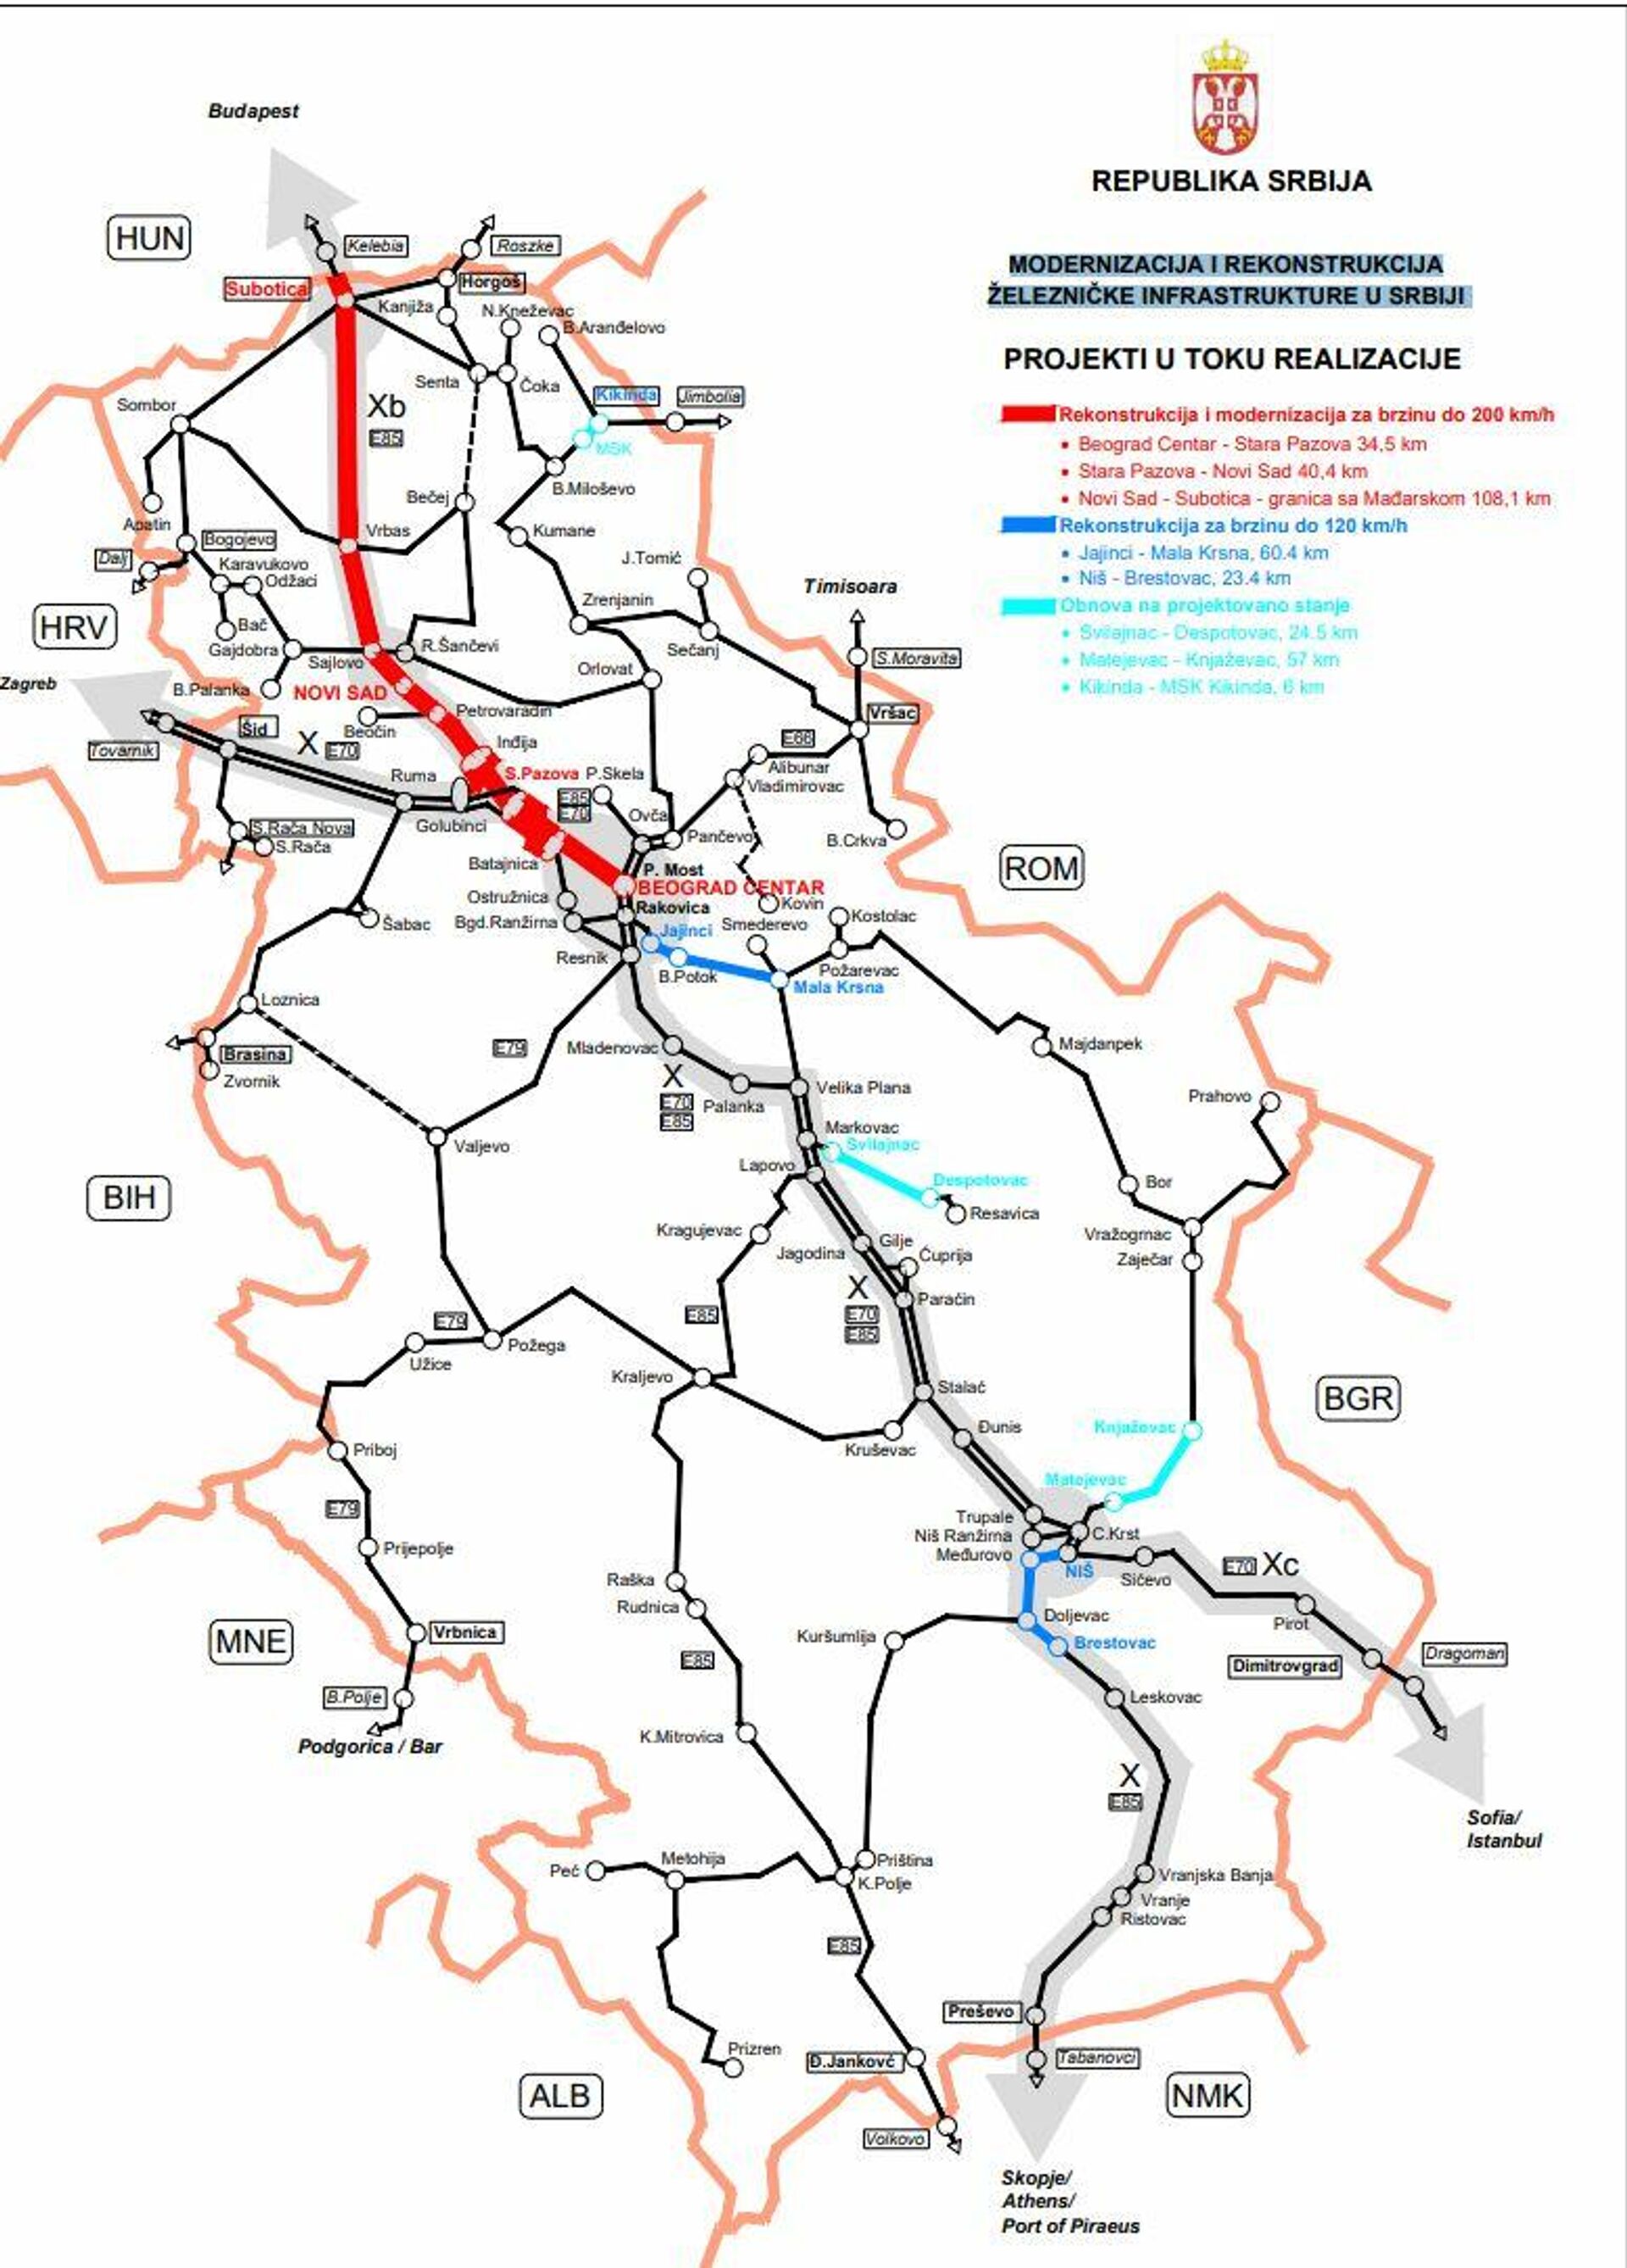 Modernizacija i rekonstrukcija železničke infrastrukture u Srbiji - tekući projekti - Sputnik Srbija, 1920, 24.09.2021